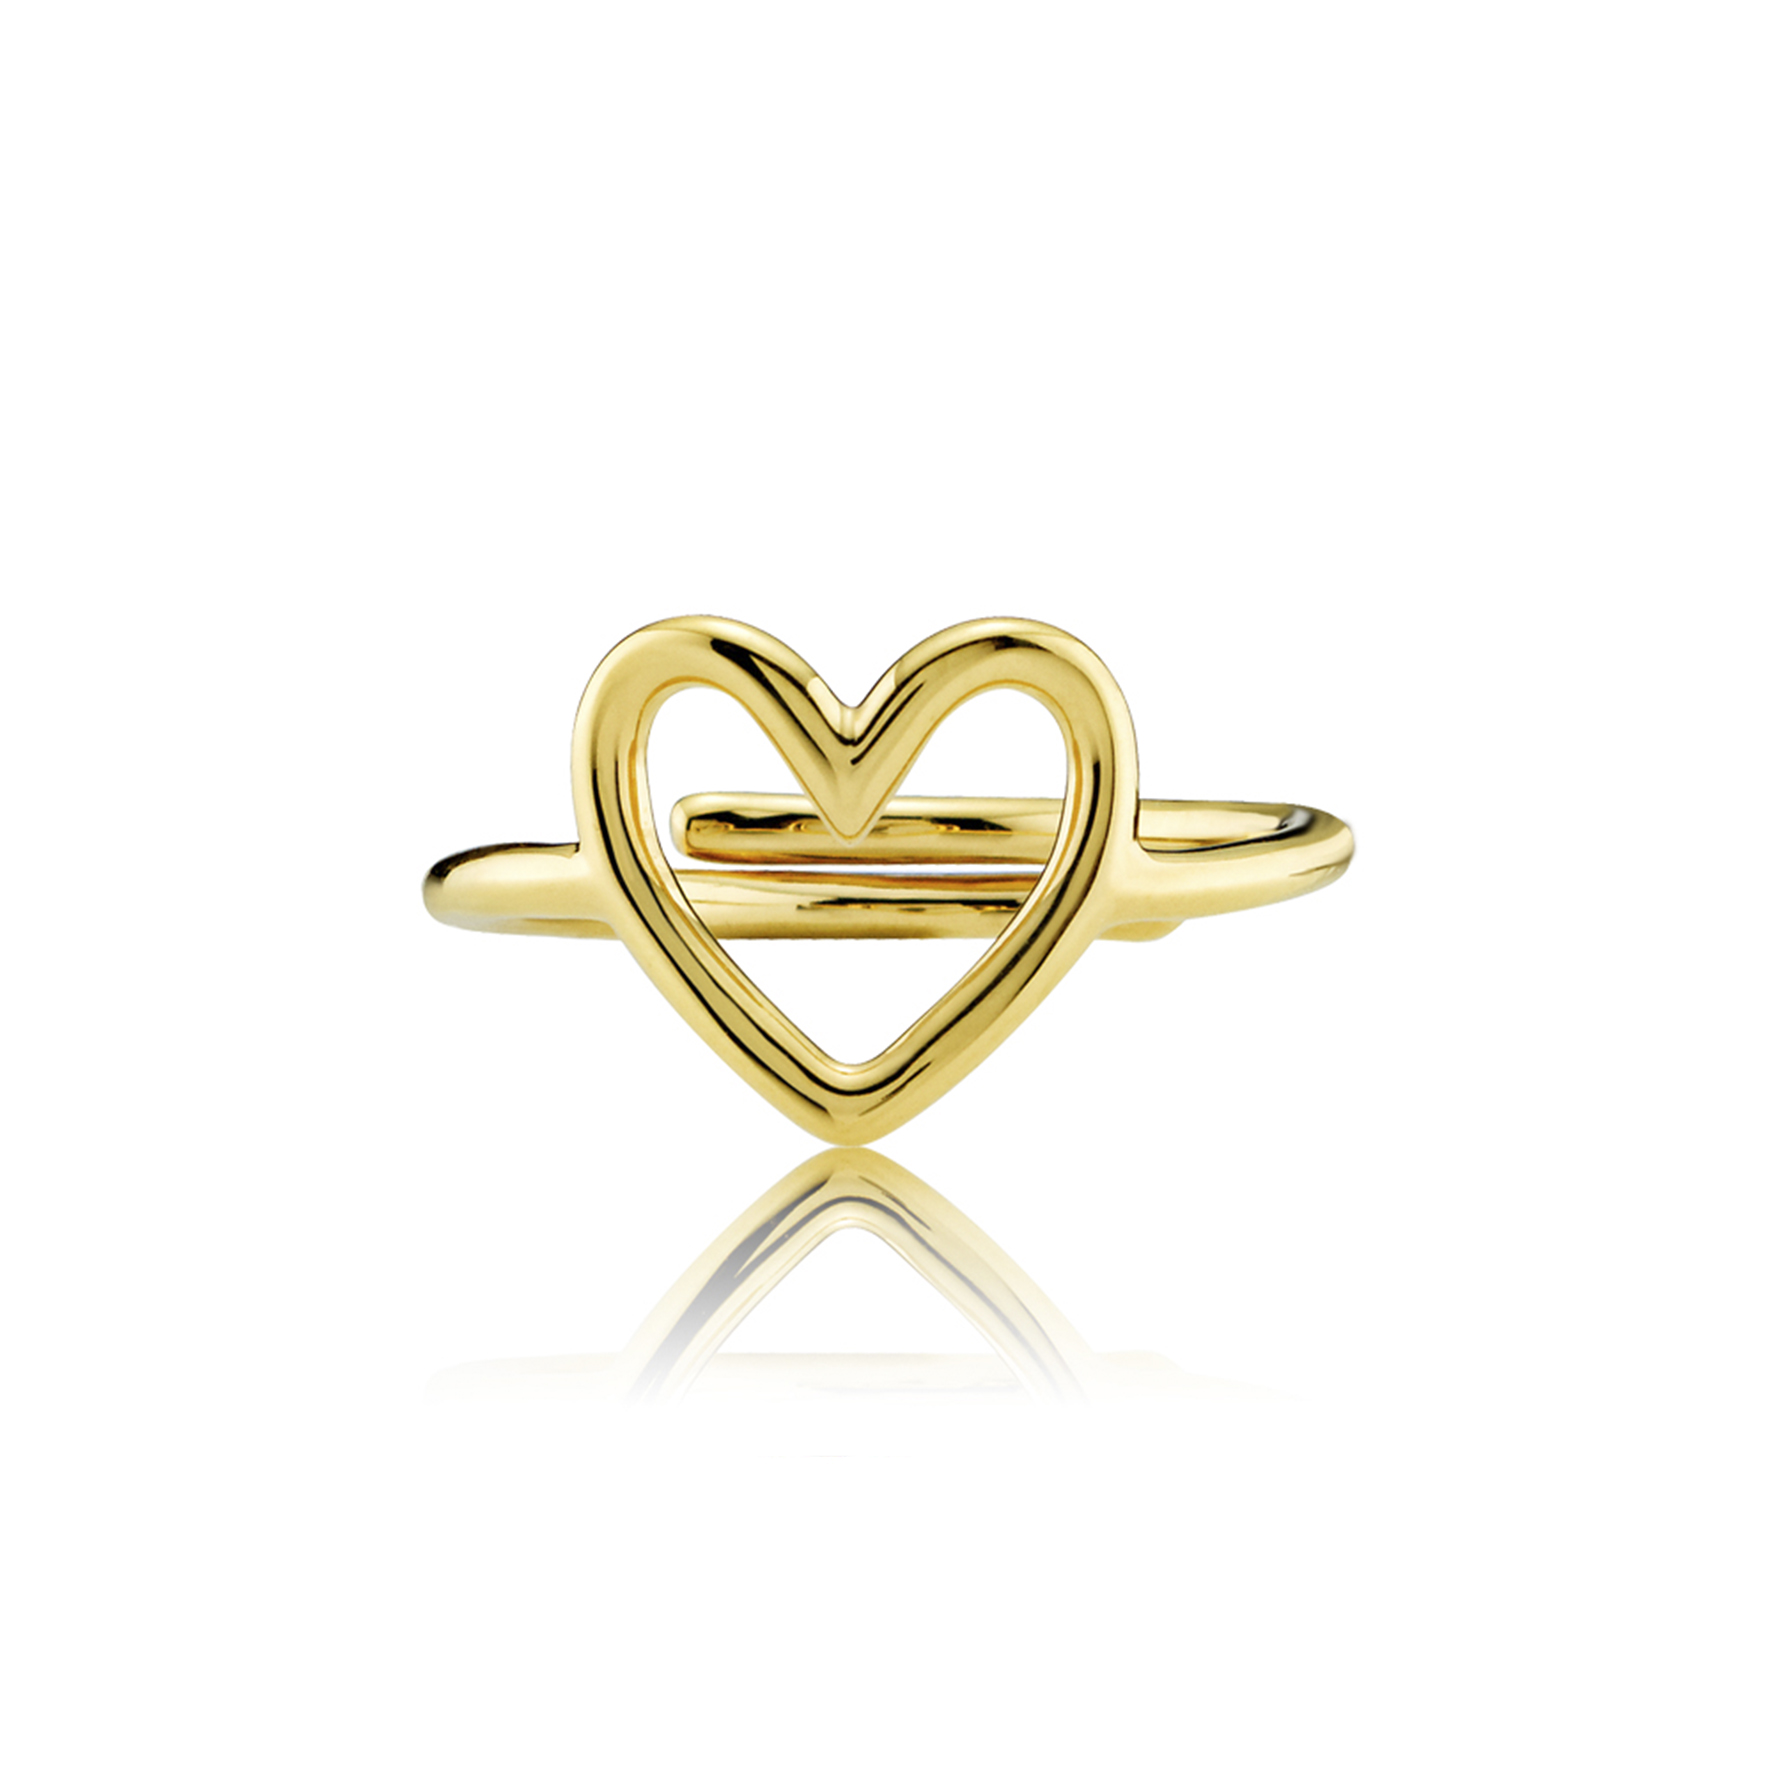 Abe kultur utilfredsstillende Køb Love Charity Ring i Forgyldt-Sølv Sterling 925 fra Izabel Camille